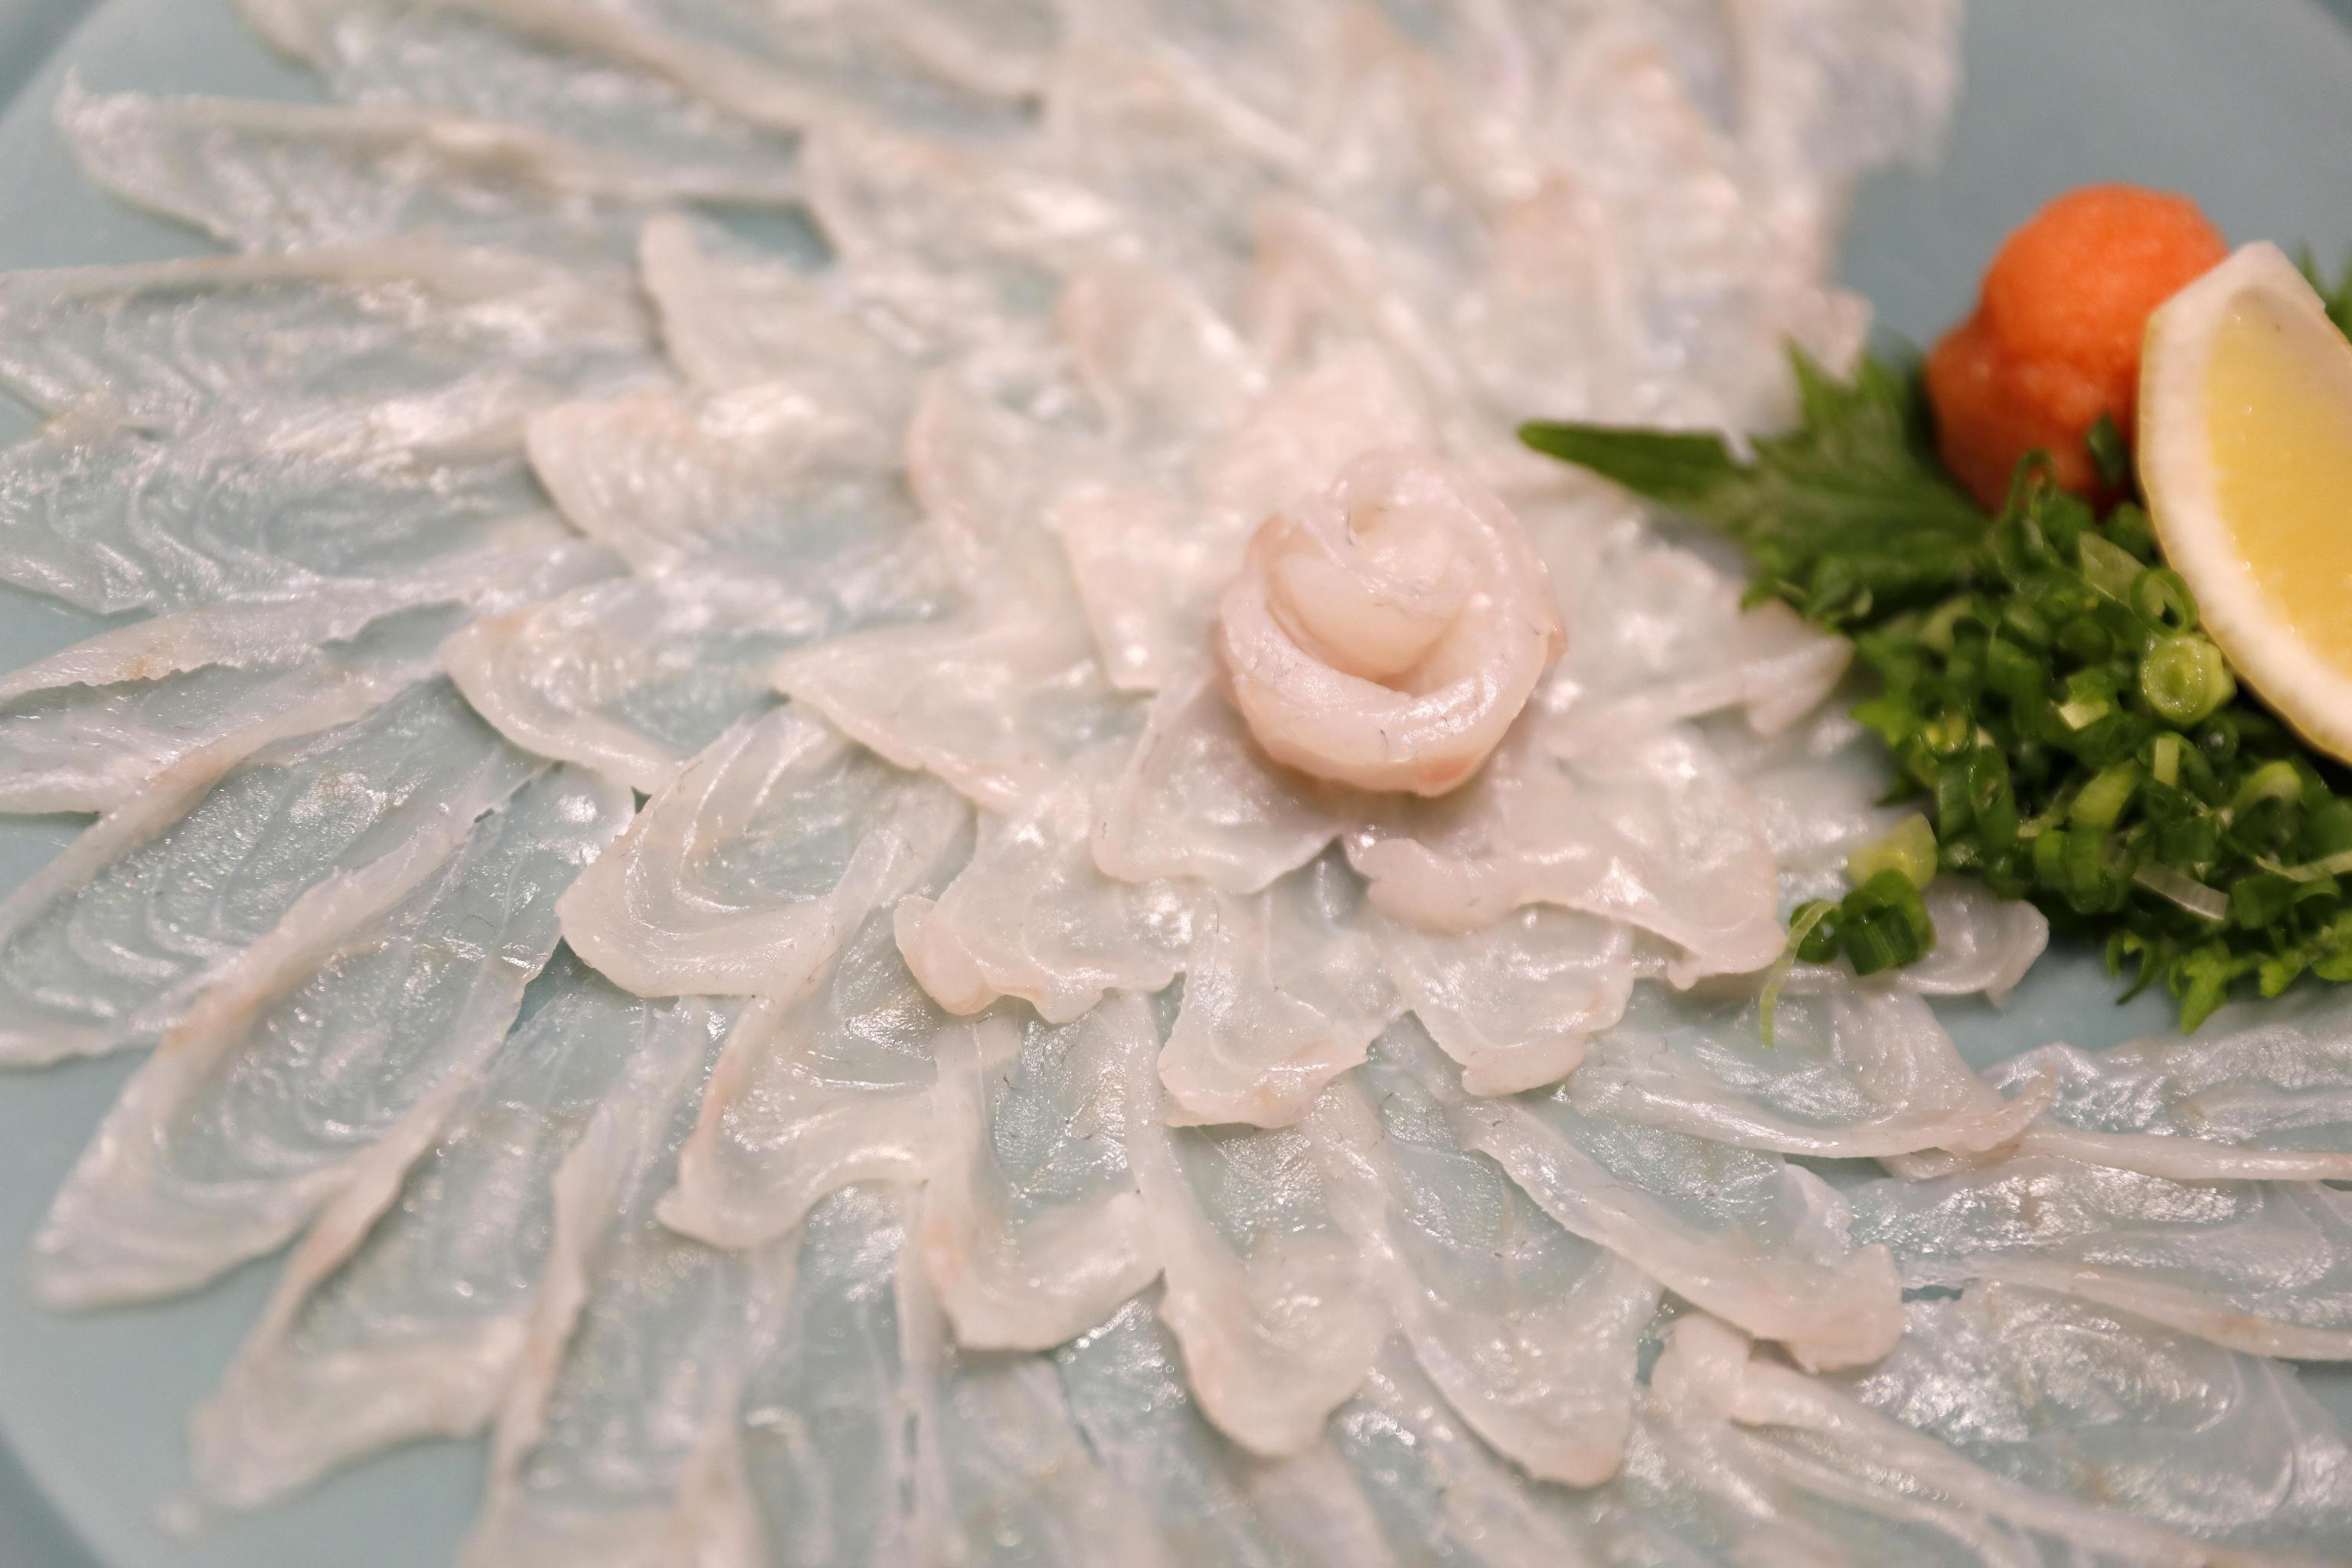 Dettaglio del sashimi preparato con il pesce palla